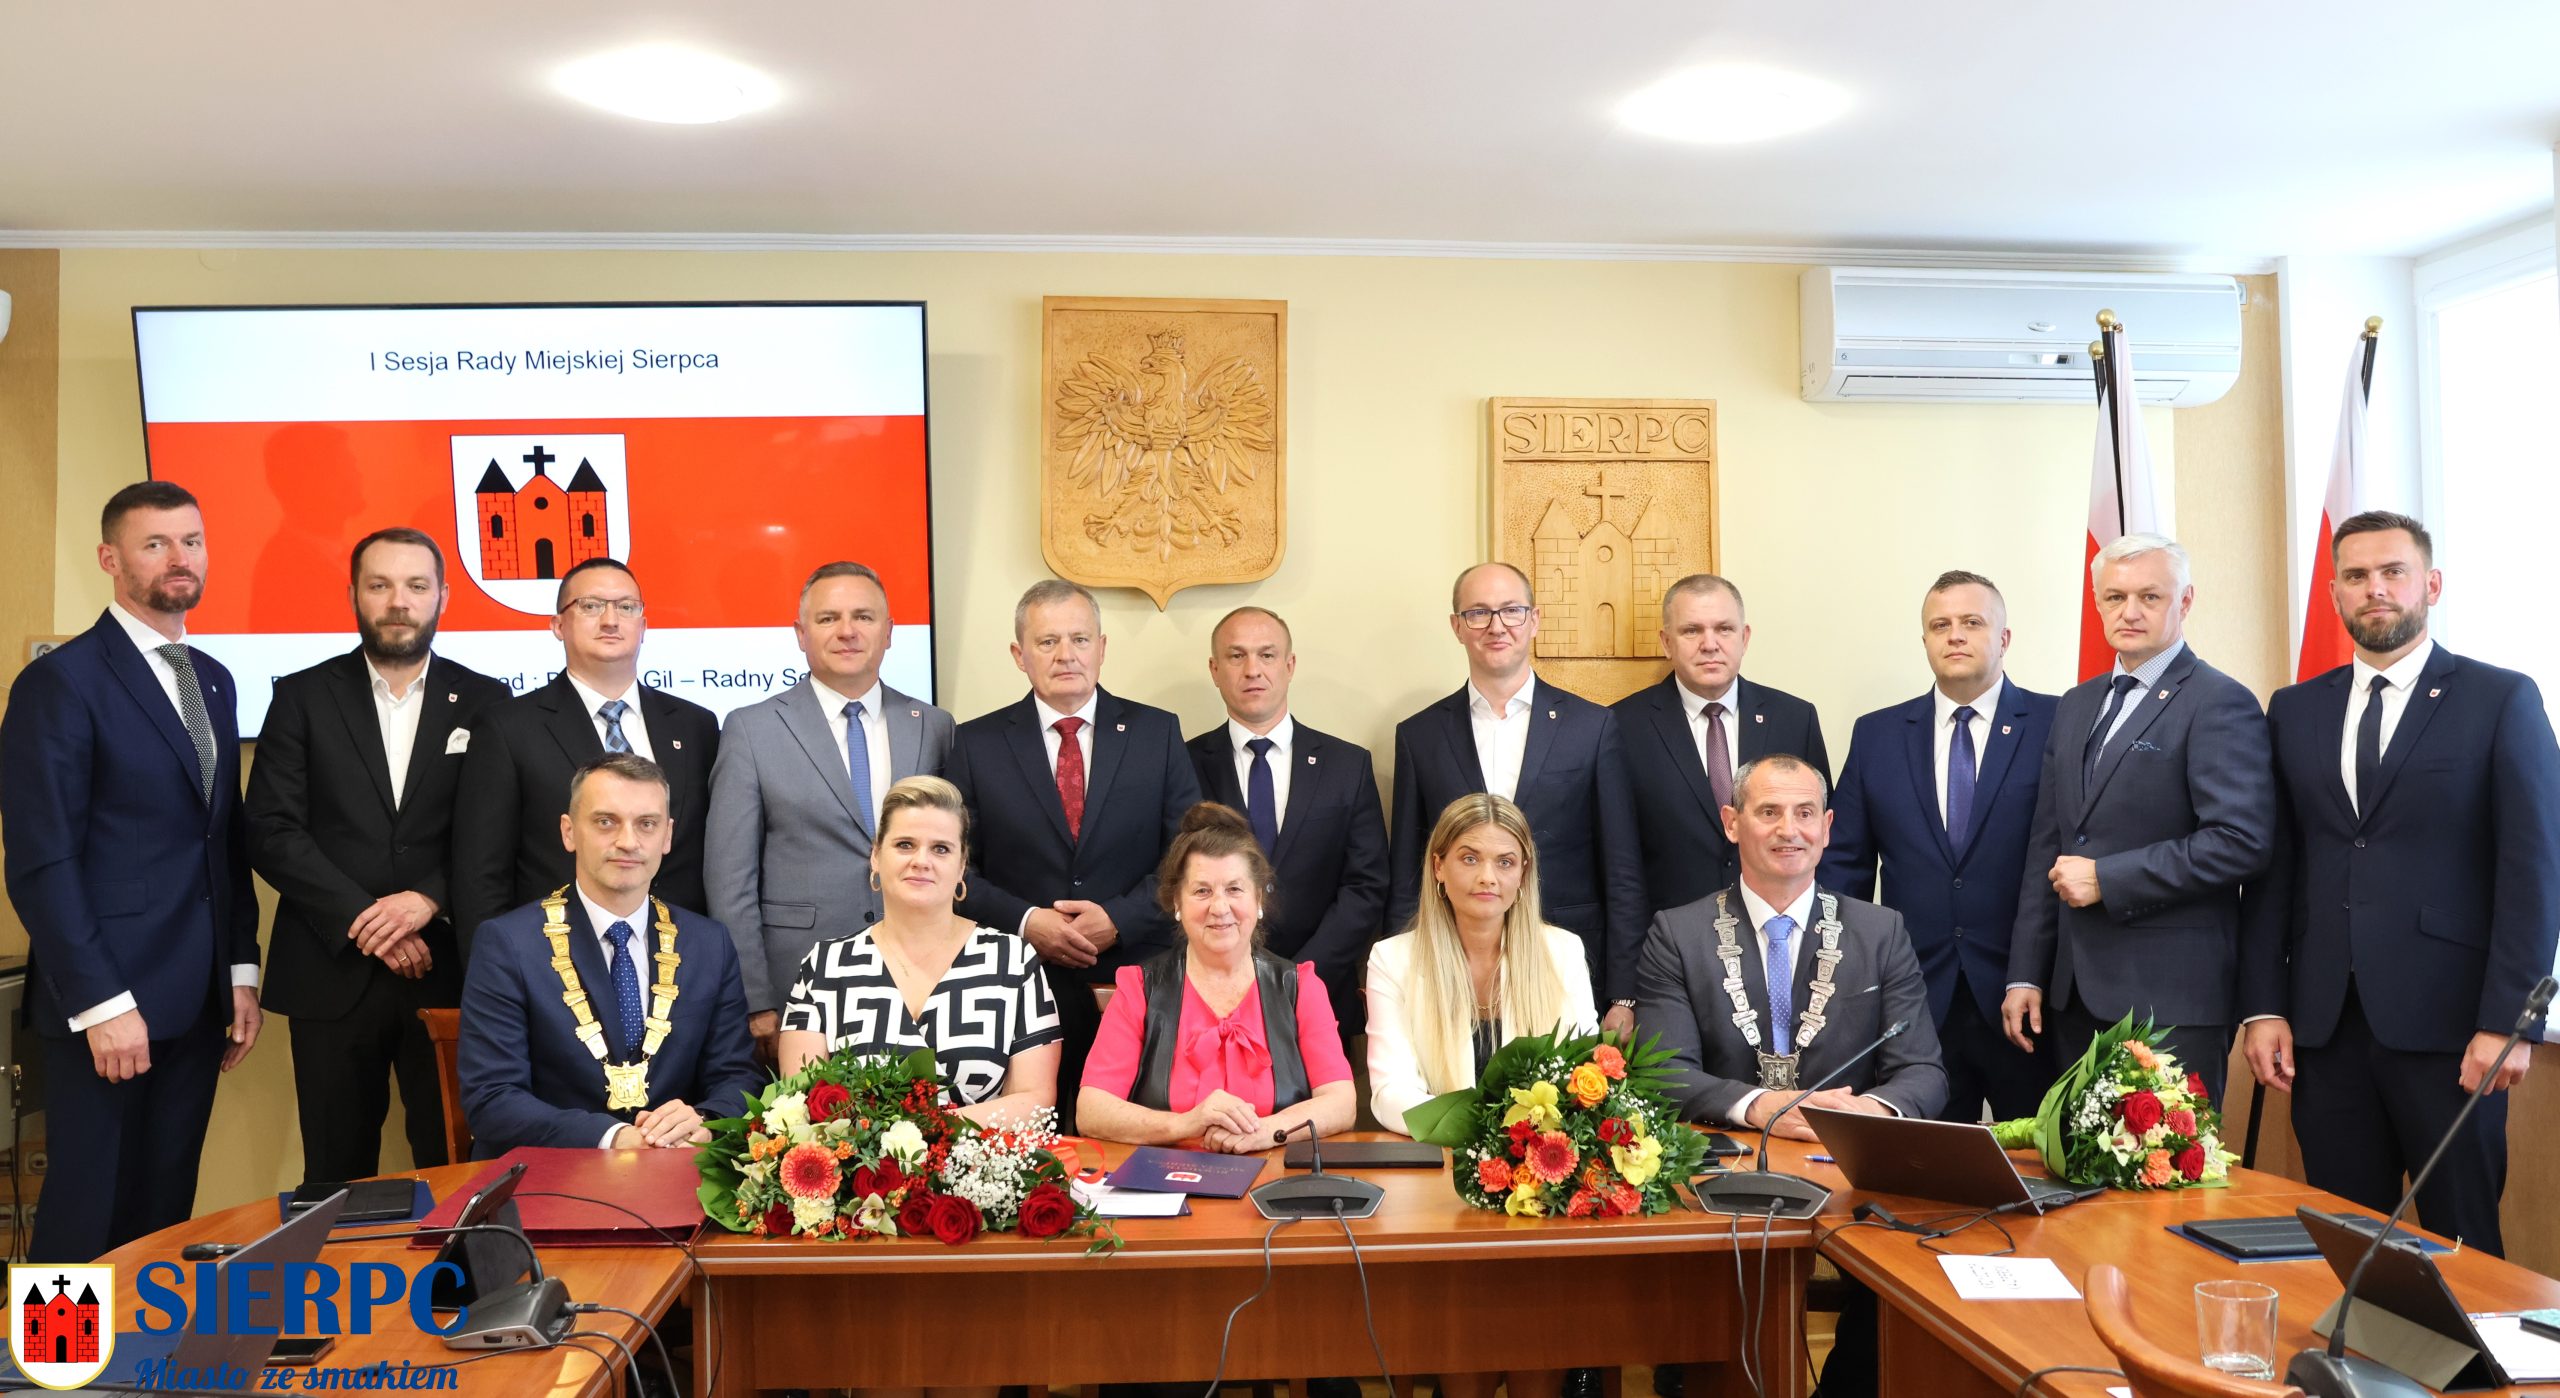 Grupowe zdjęcie Radnych Rady Miejskiej Sierpca wraz Burmistrzem oraz Zastępcą Burmistrza.